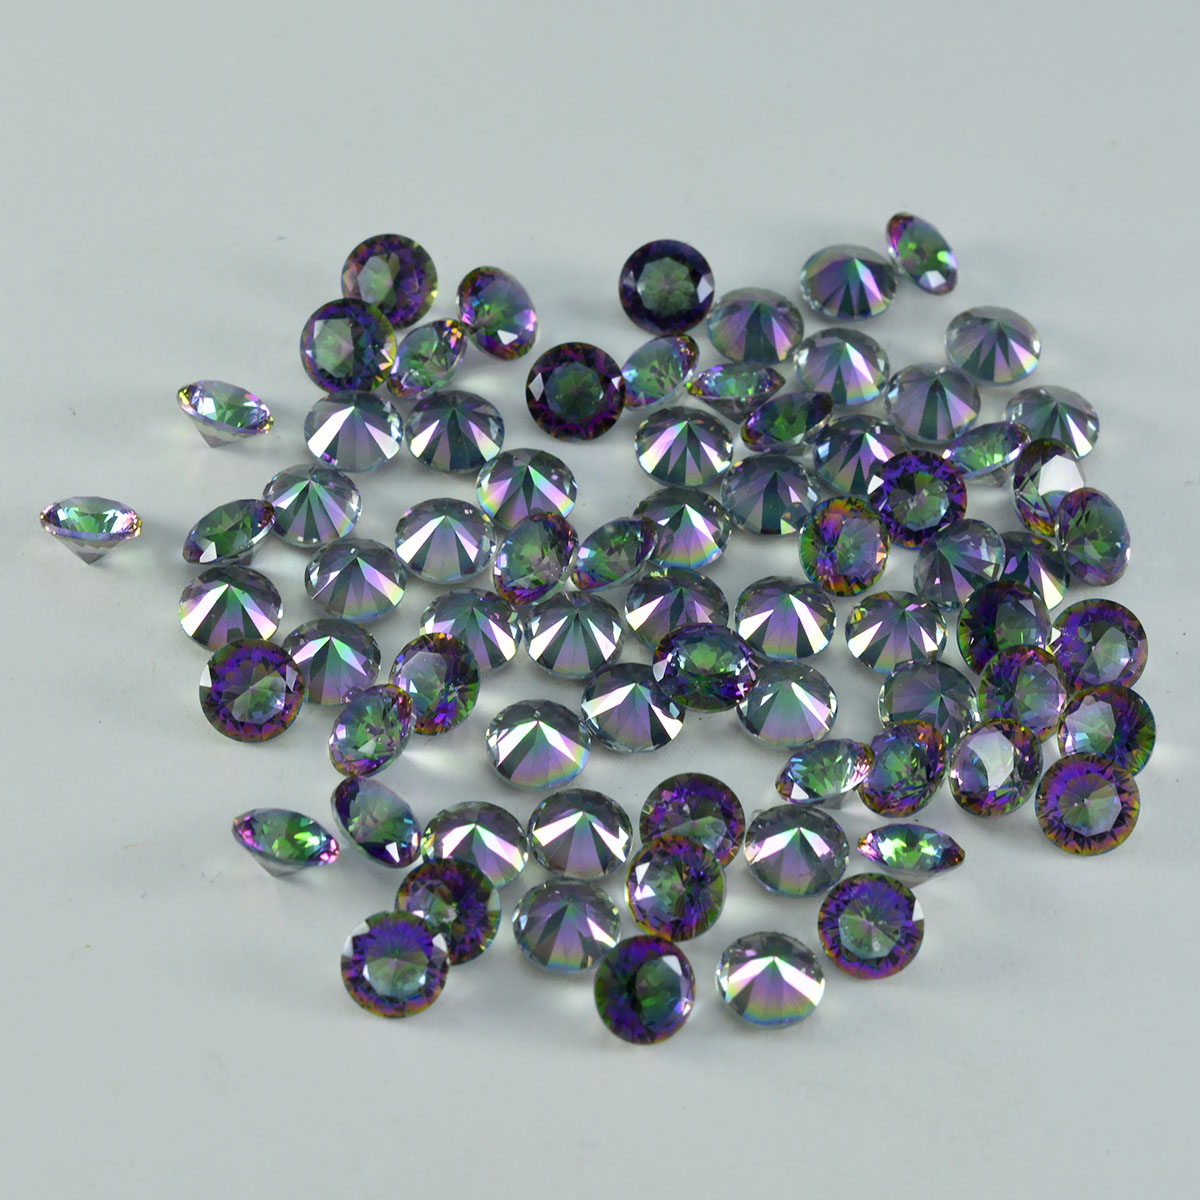 Riyogems 1pc quartz mystique multicolore à facettes 4x4mm forme ronde qualité douce pierre précieuse en vrac